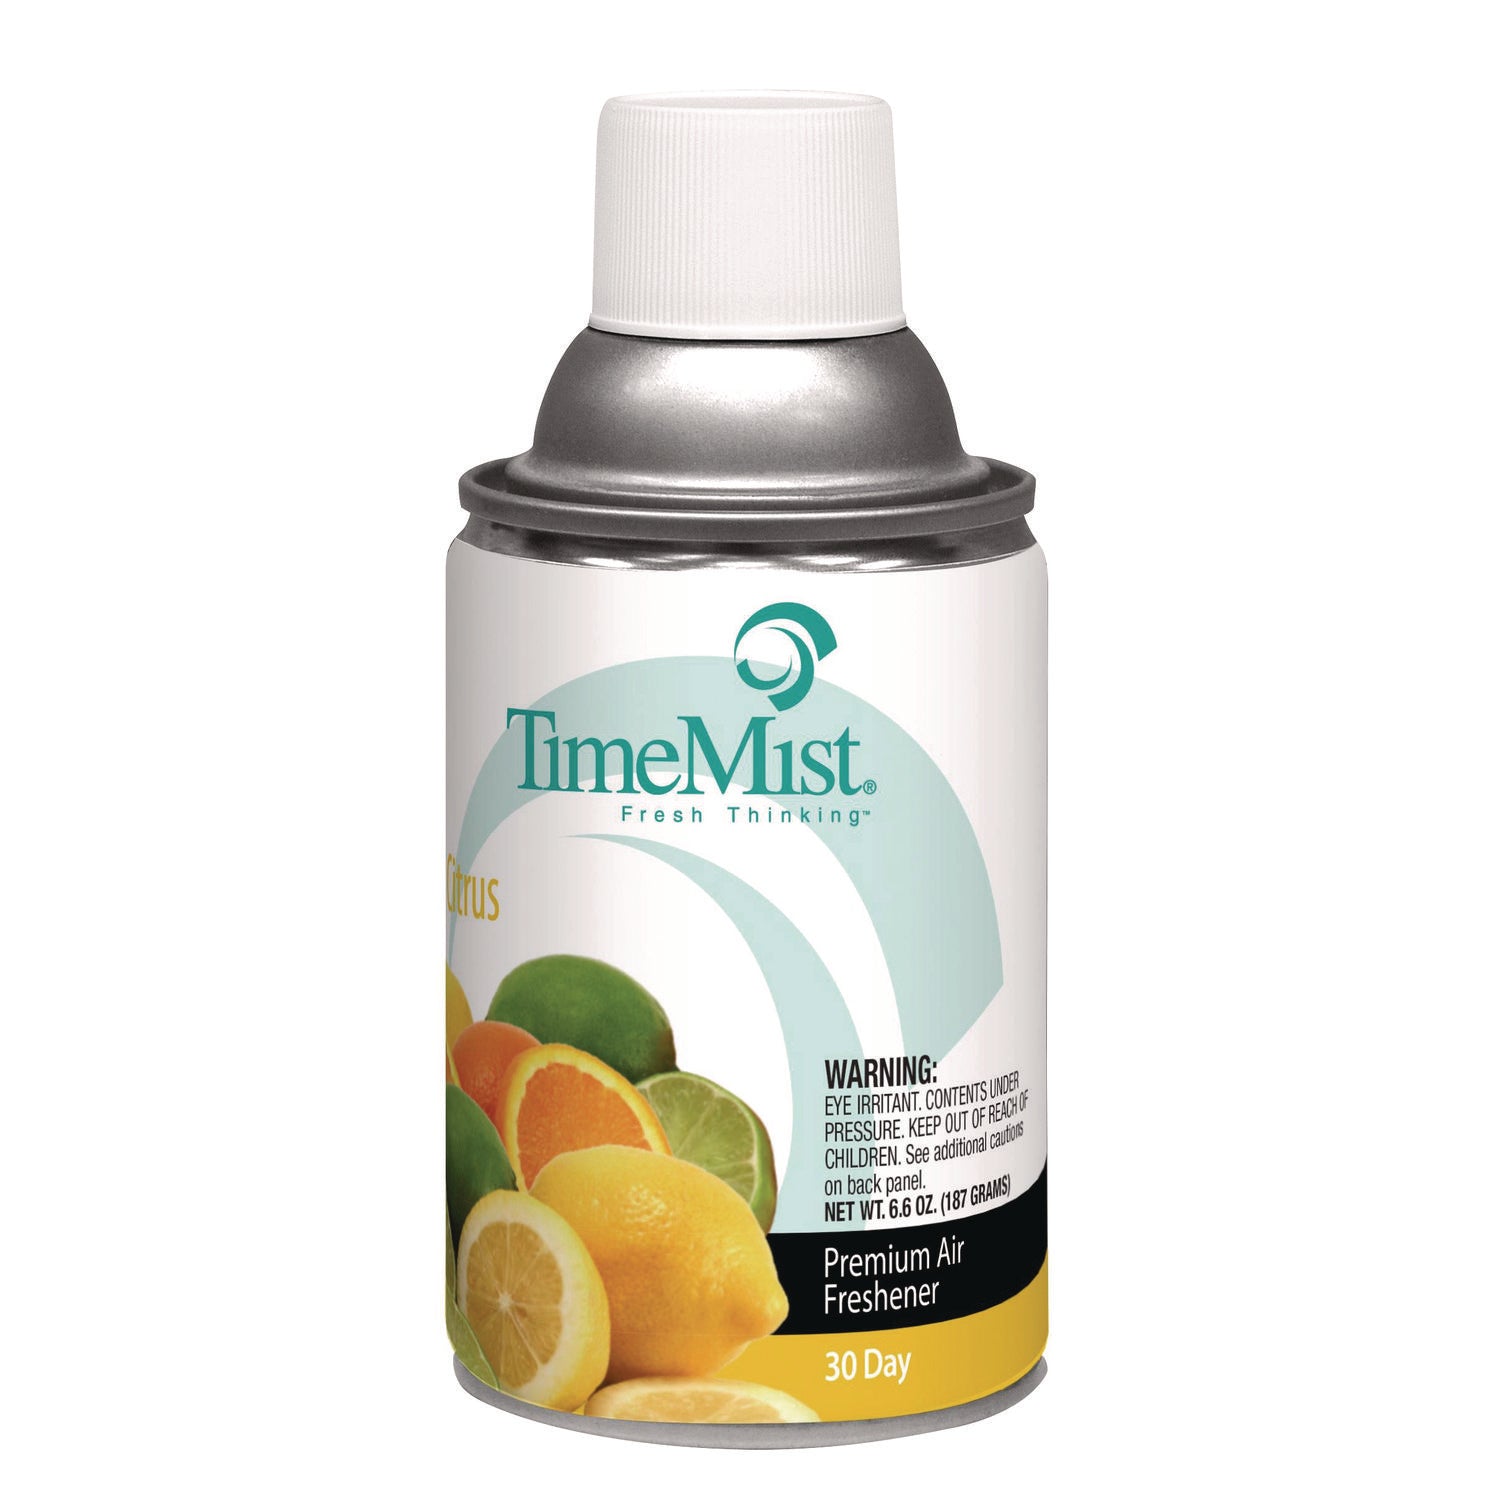 Premium Metered Air Freshener Refill, Citrus, 6.6 oz Aerosol Spray - 1